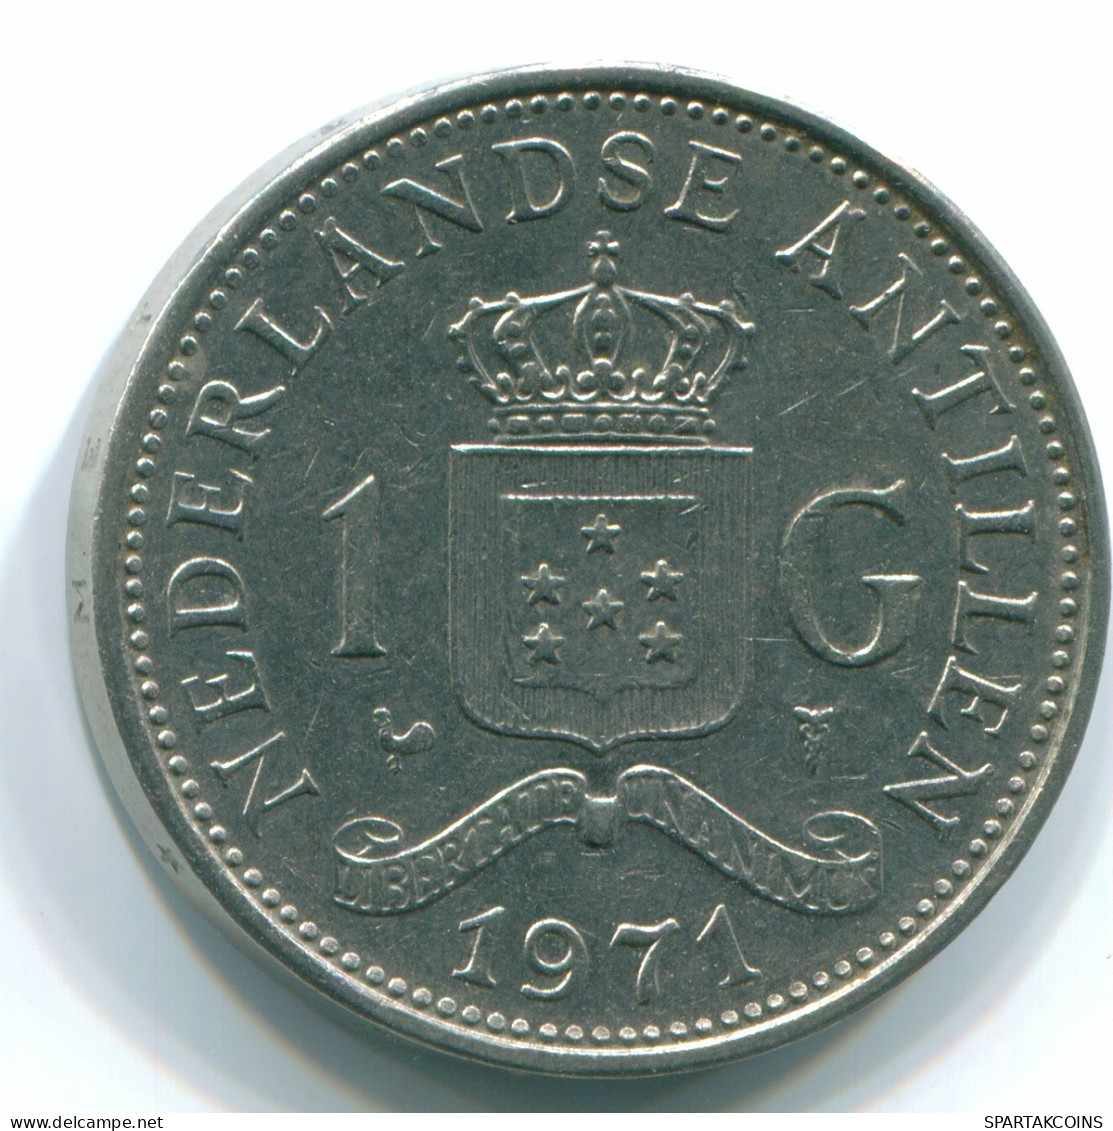 1 GULDEN 1971 ANTILLAS NEERLANDESAS Nickel Colonial Moneda #S11916.E.A - Netherlands Antilles